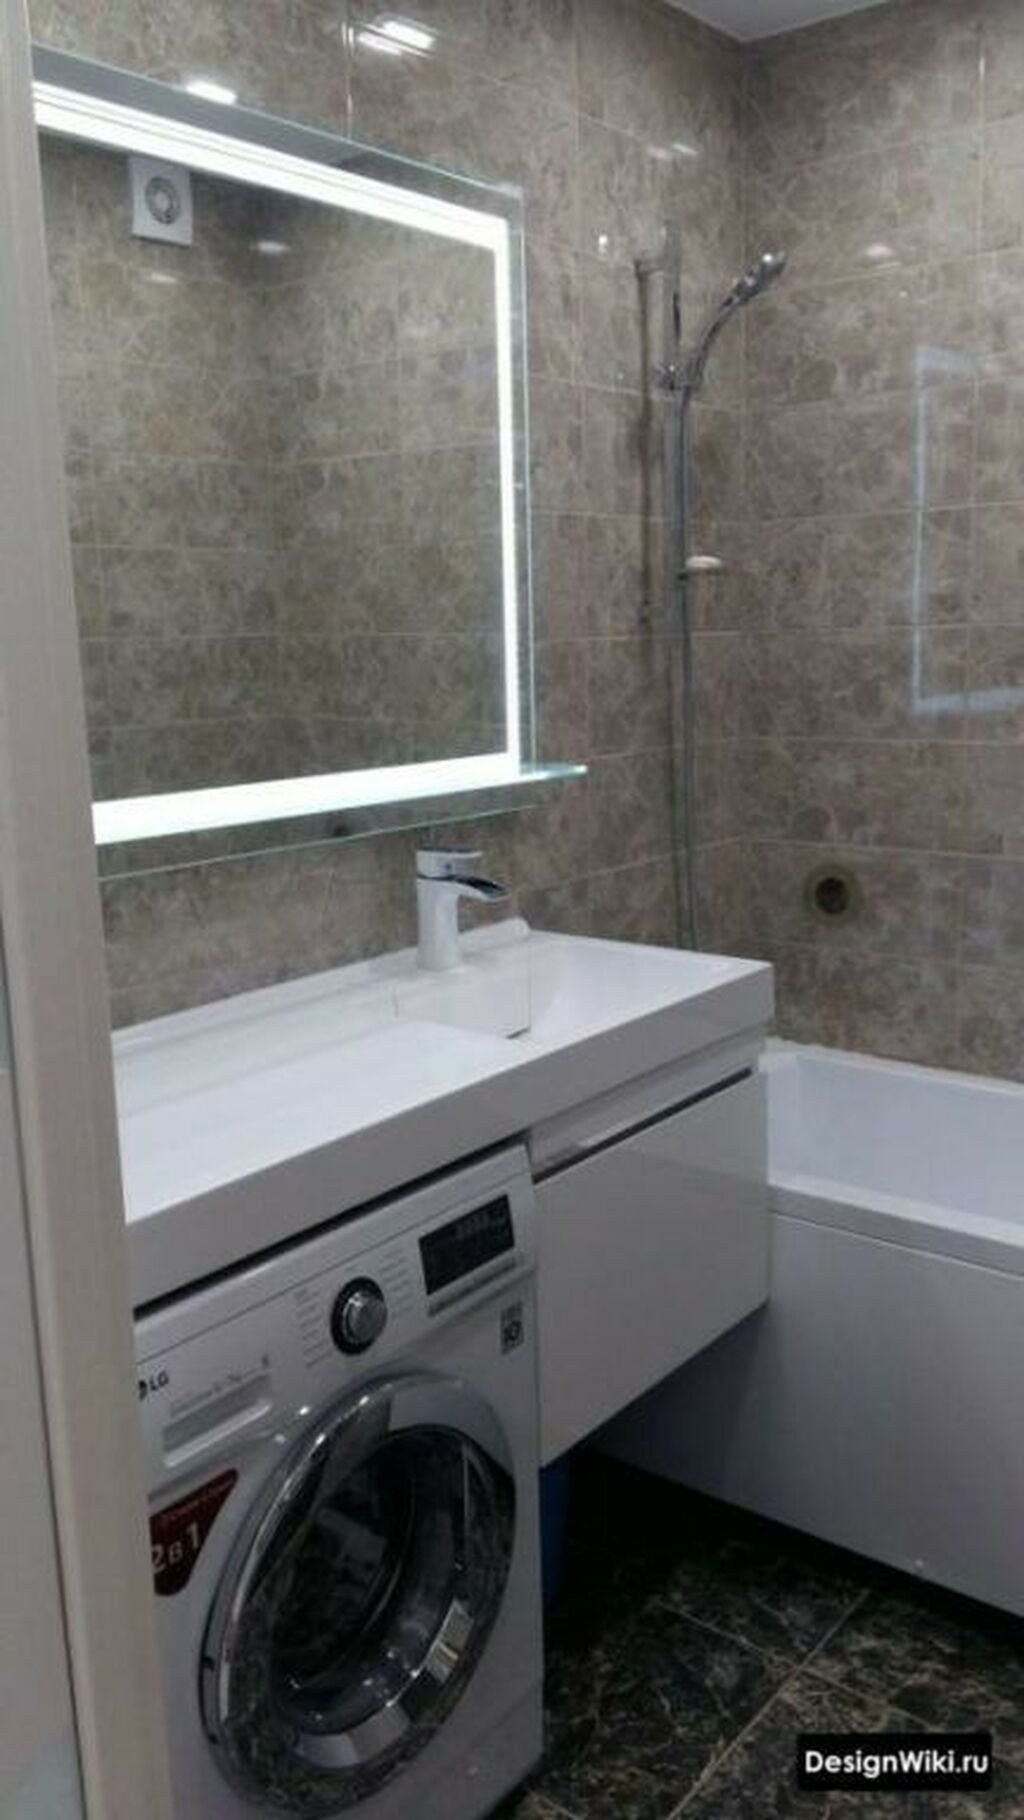 Ванная комната со стиральной машиной под раковиной в хрущевке